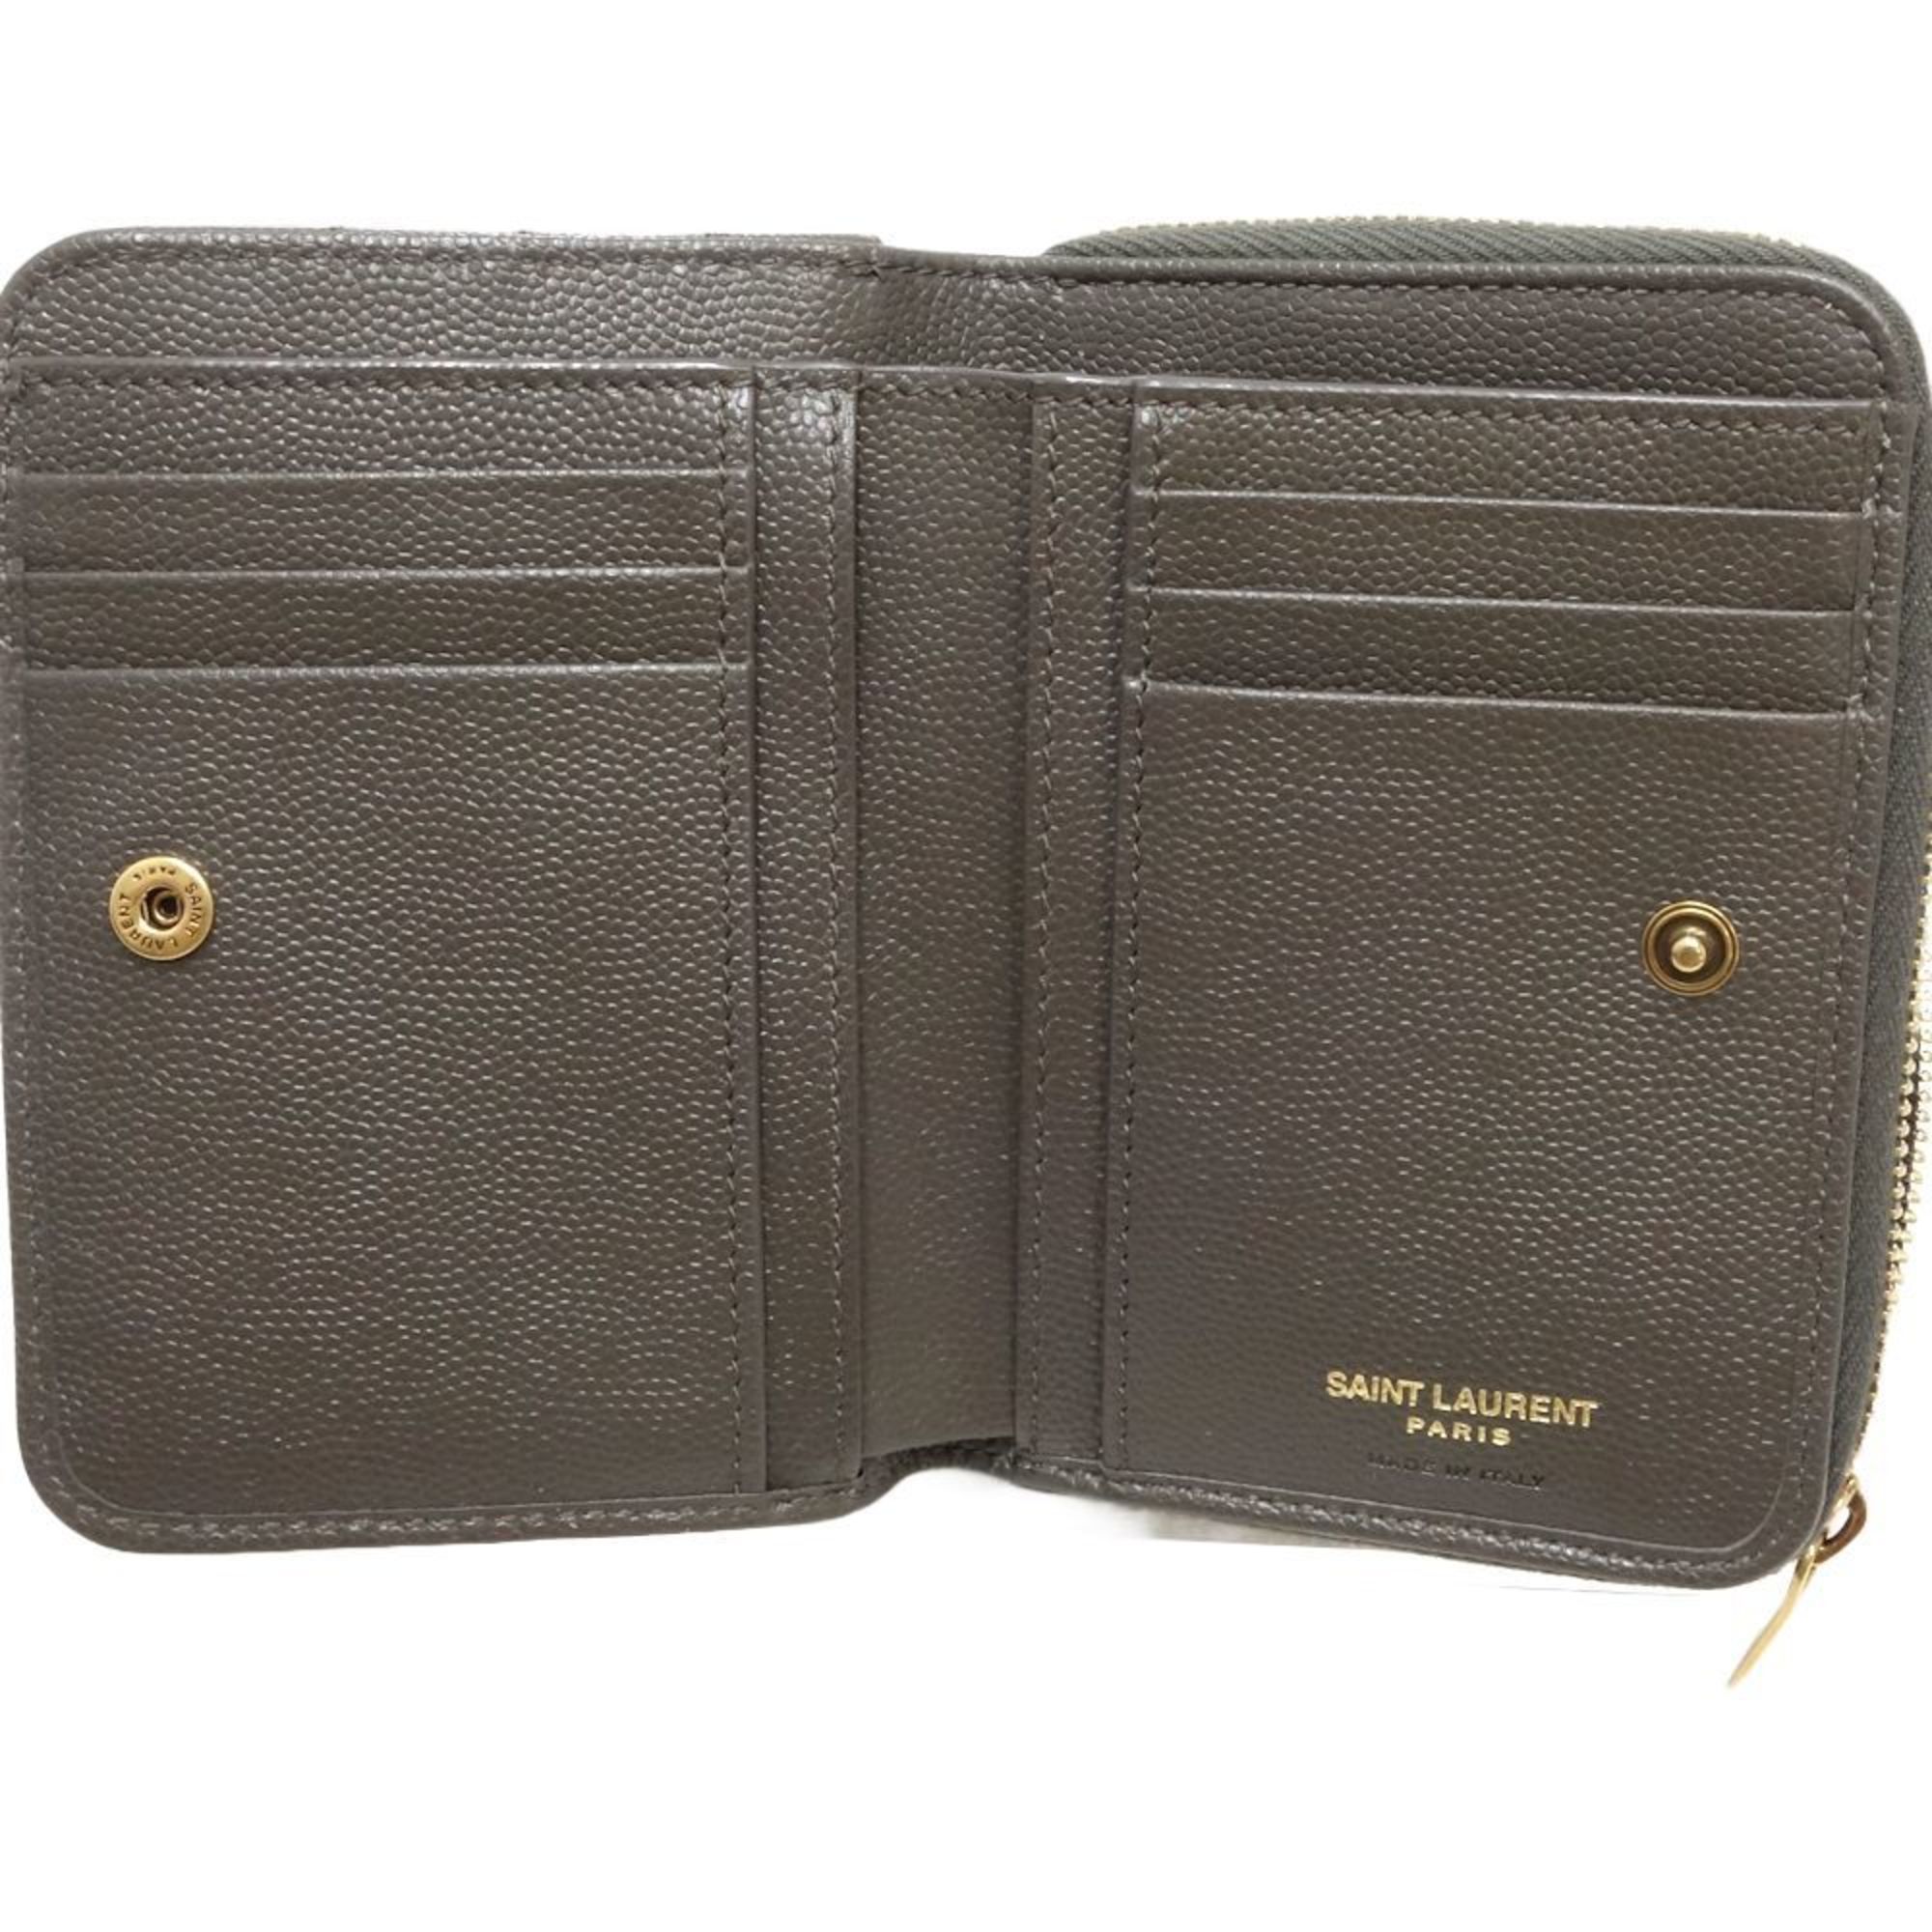 SAINT LAURENT Compact Zip Wallet 403723 Bifold Calf Gray 180259